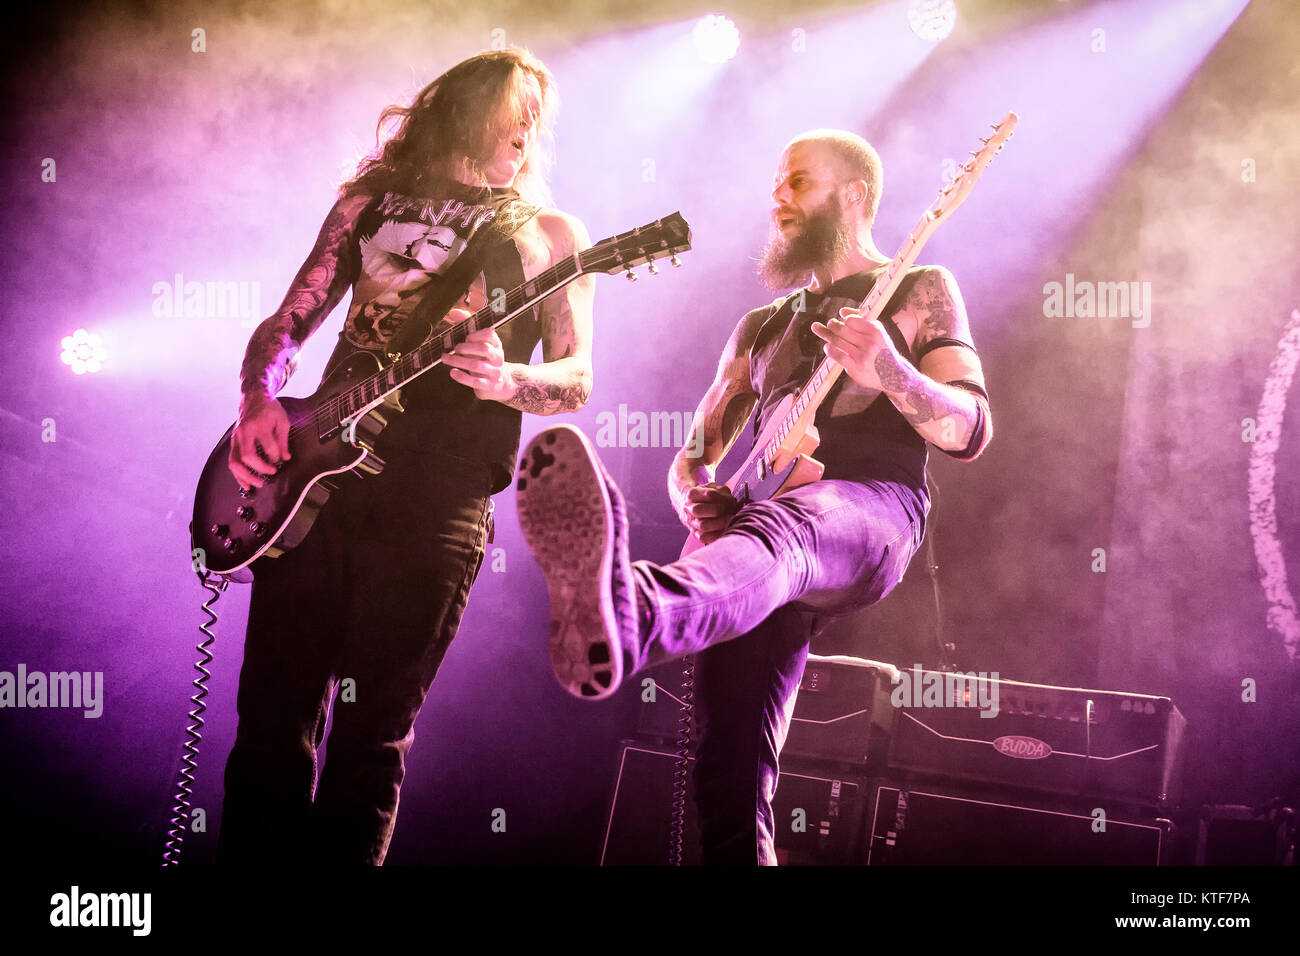 La banda de heavy metal Americana Baronesa realiza un concierto en vivo en el Rockefeller de Oslo. Aquí el vocalista y guitarrista John Baizley (R) es visto en vivo en el escenario con Peter Adams (L). Noruega, el 30/03 de 2016. Foto de stock